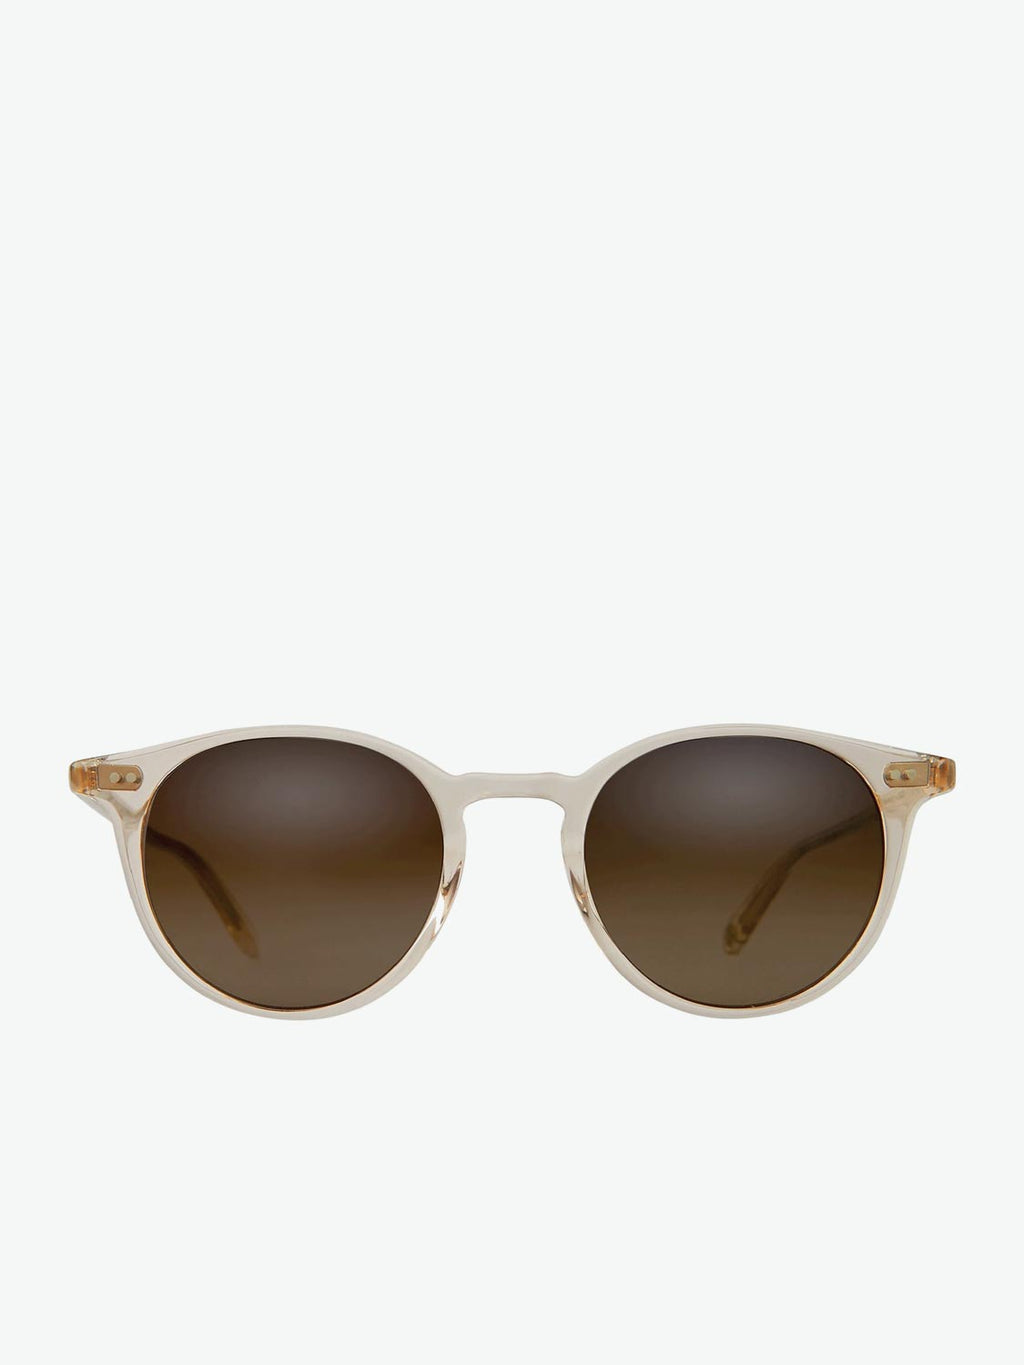 Garrett Leight Clune Sunglasses Prosecco | A